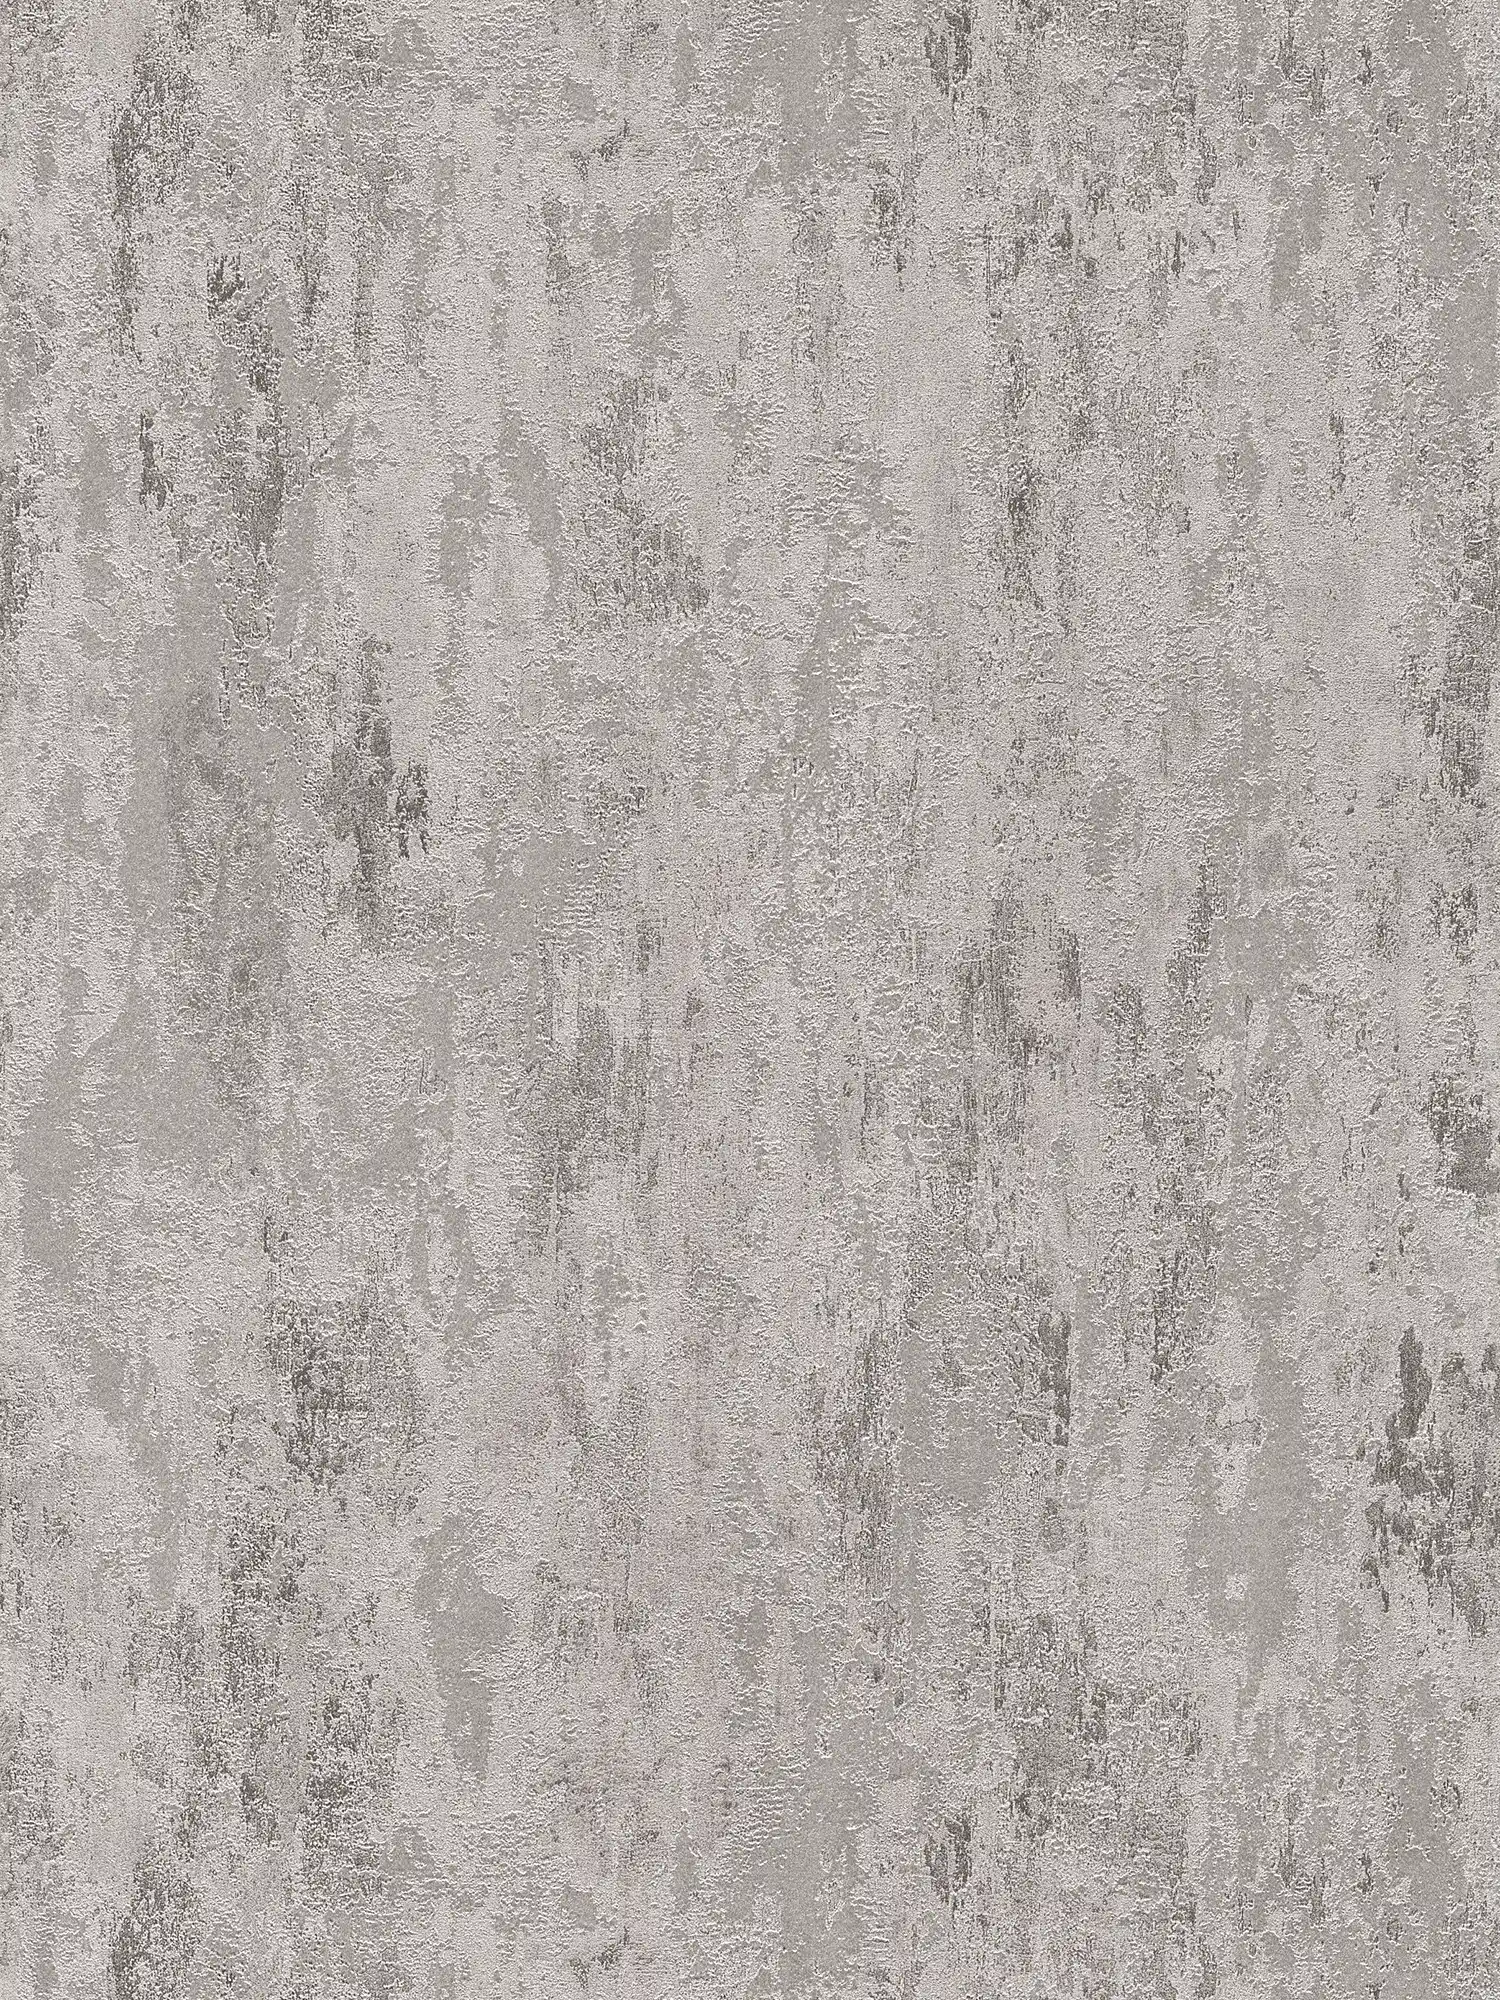 Roestvast vliesbehang met structuurpatroon - grijs, zilver
